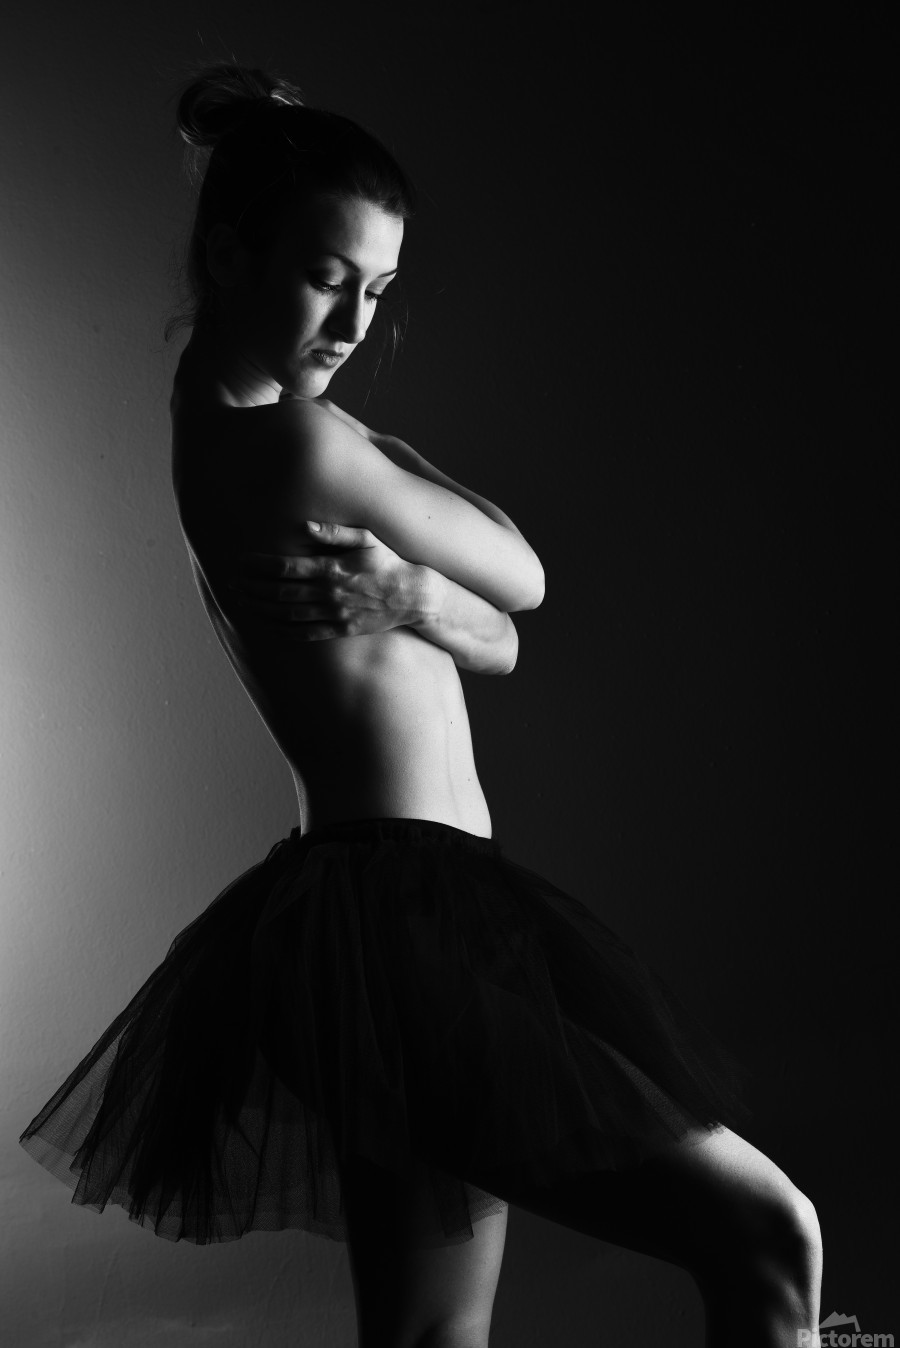 angela arriesgado share nude ballerina pictures photos